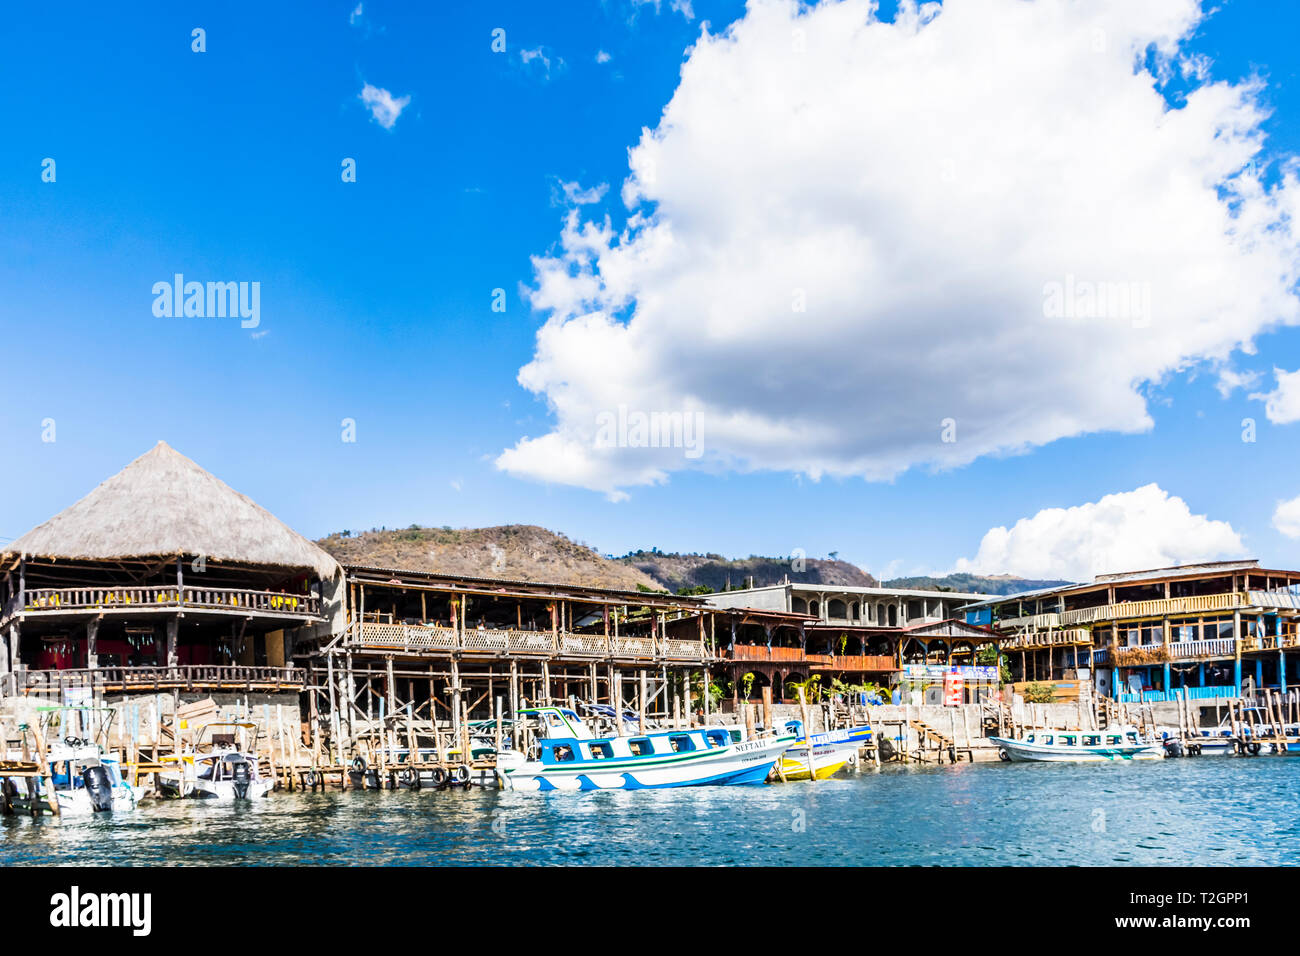 Panajachel, Lac Atitlan, Guatemala - mars 8, 2019 : Bateaux amarrés à jetées par Lakeside restaurants à Panajachel sur le lac Atitlan. Banque D'Images